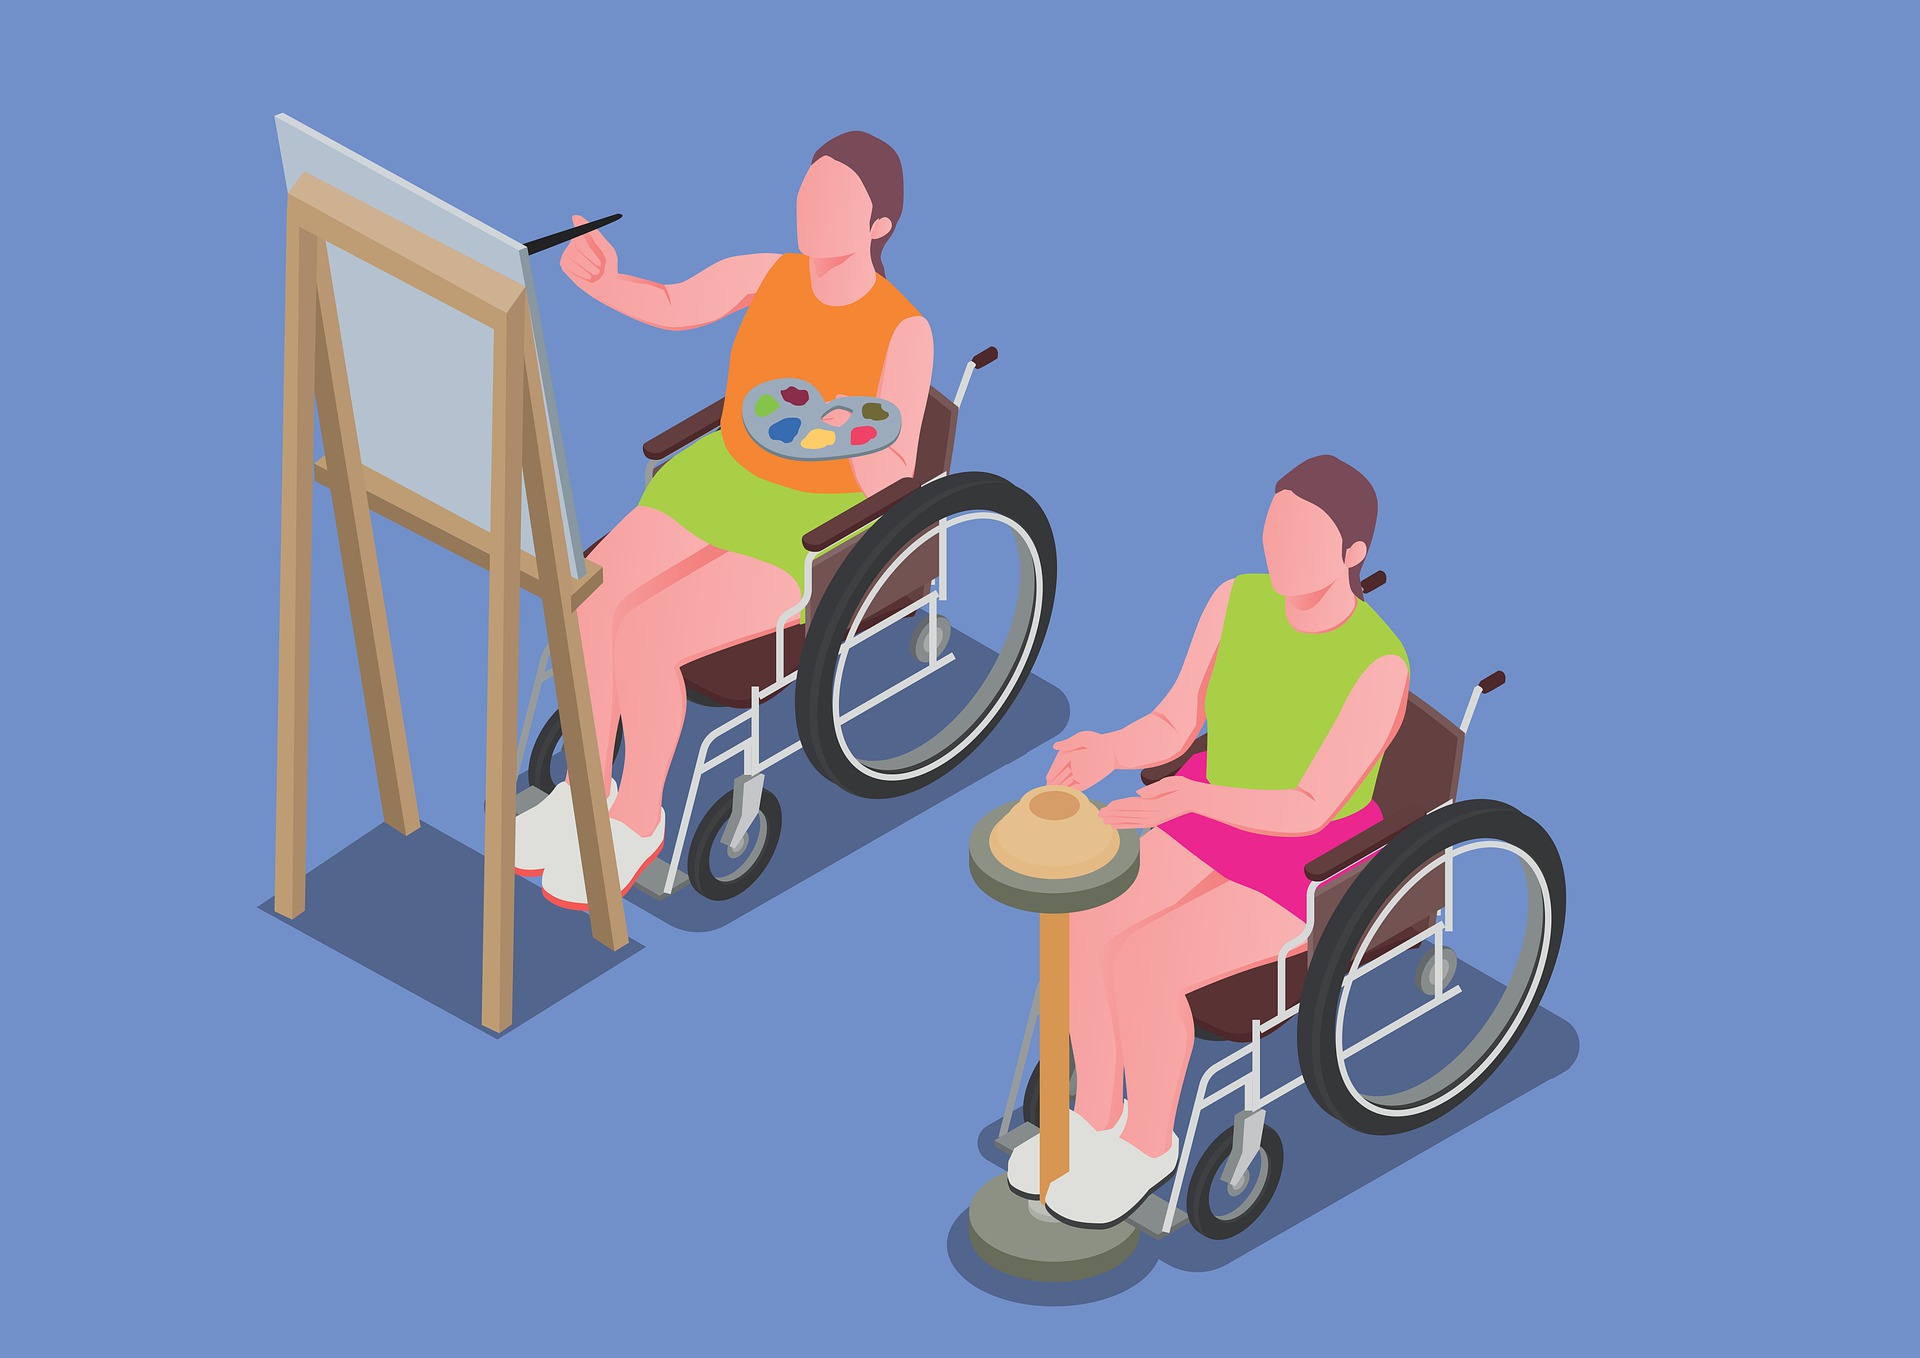 Un dessin de deux personnes handicapées qui font des activités artistiques, peinture et poterie